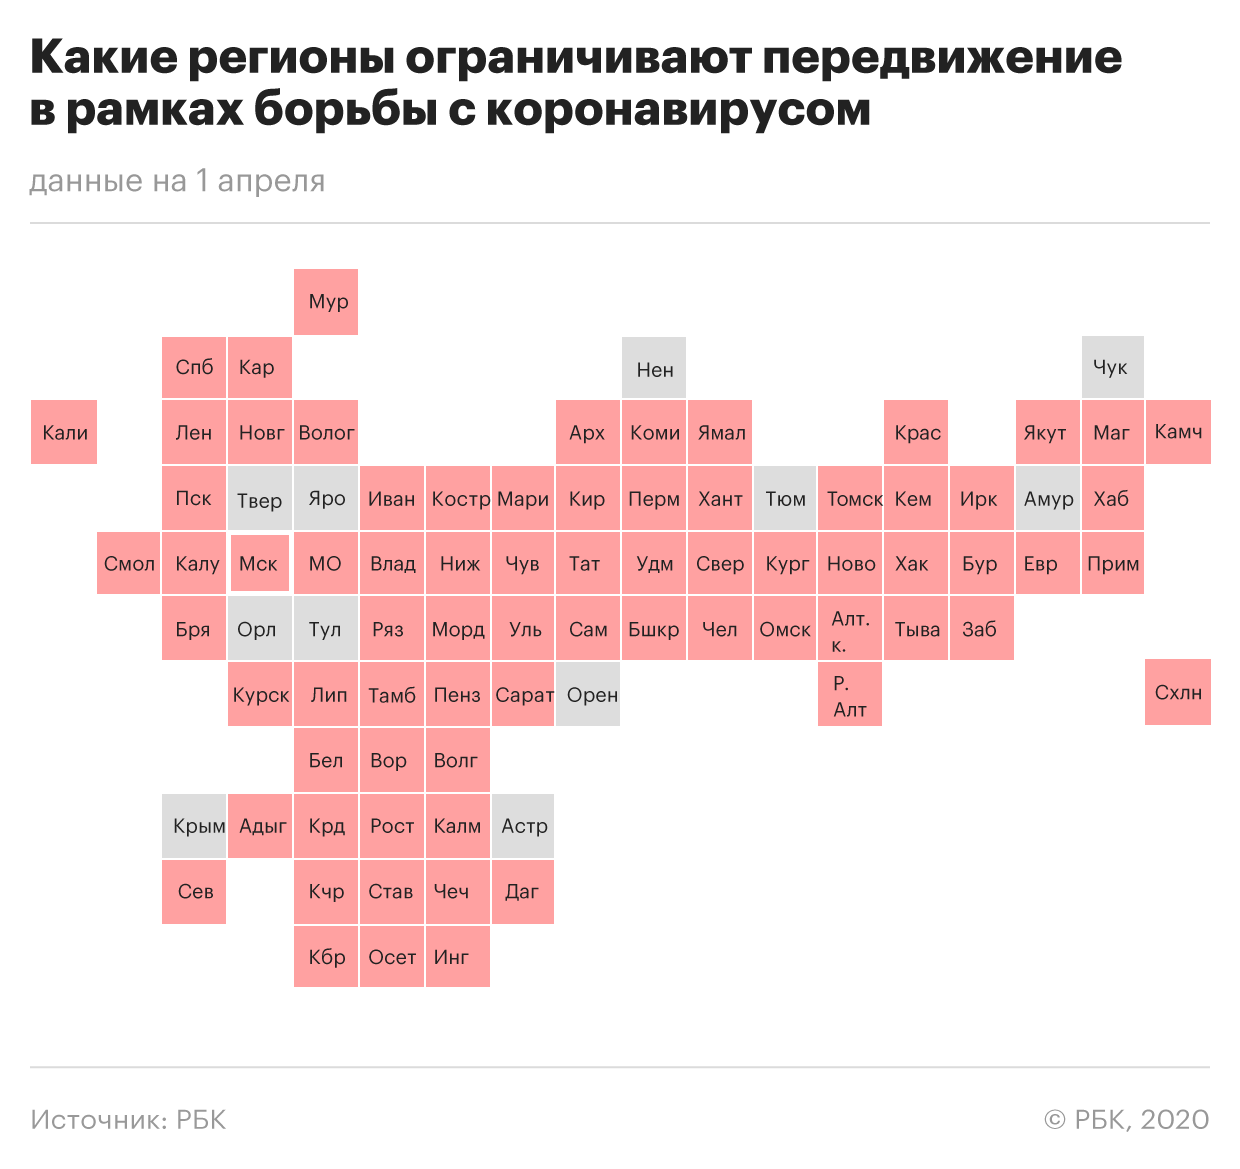 «Коронавирус в России»: Где и сколько заболевших на сегодня, последние новости на 02.04.2020 — Выходные официально продлены до 30 апреля, главное к этому часу